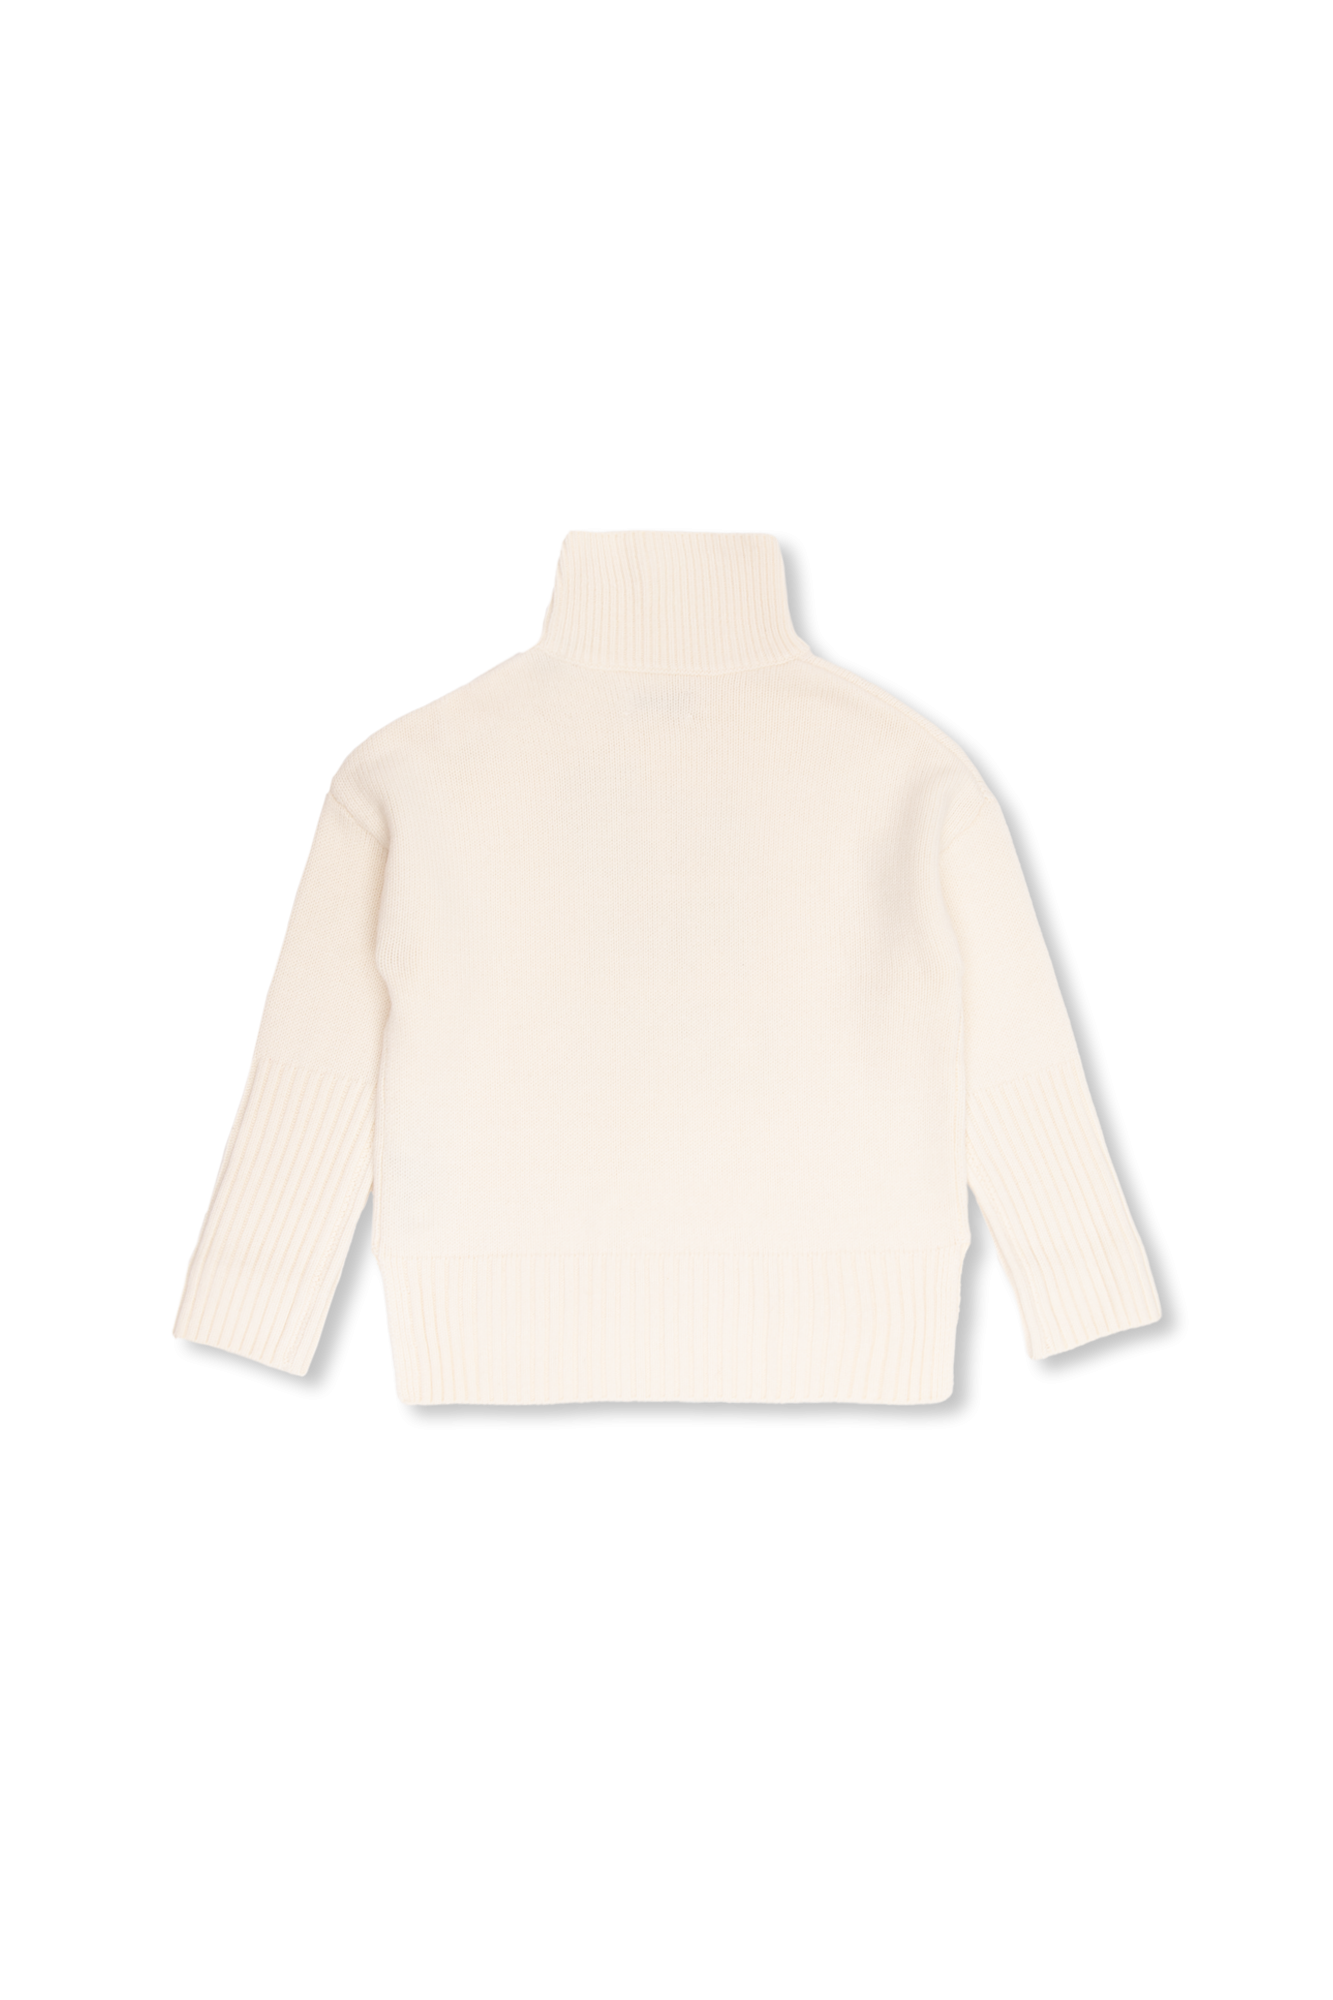 White Calvin Klein Jeans T sweaters davanti floccato StclaircomoShops shirt bianca - tono & e Highlighting staple Zadig sul tono con - sul retro Kids - su logo Voltaire Afghanistan